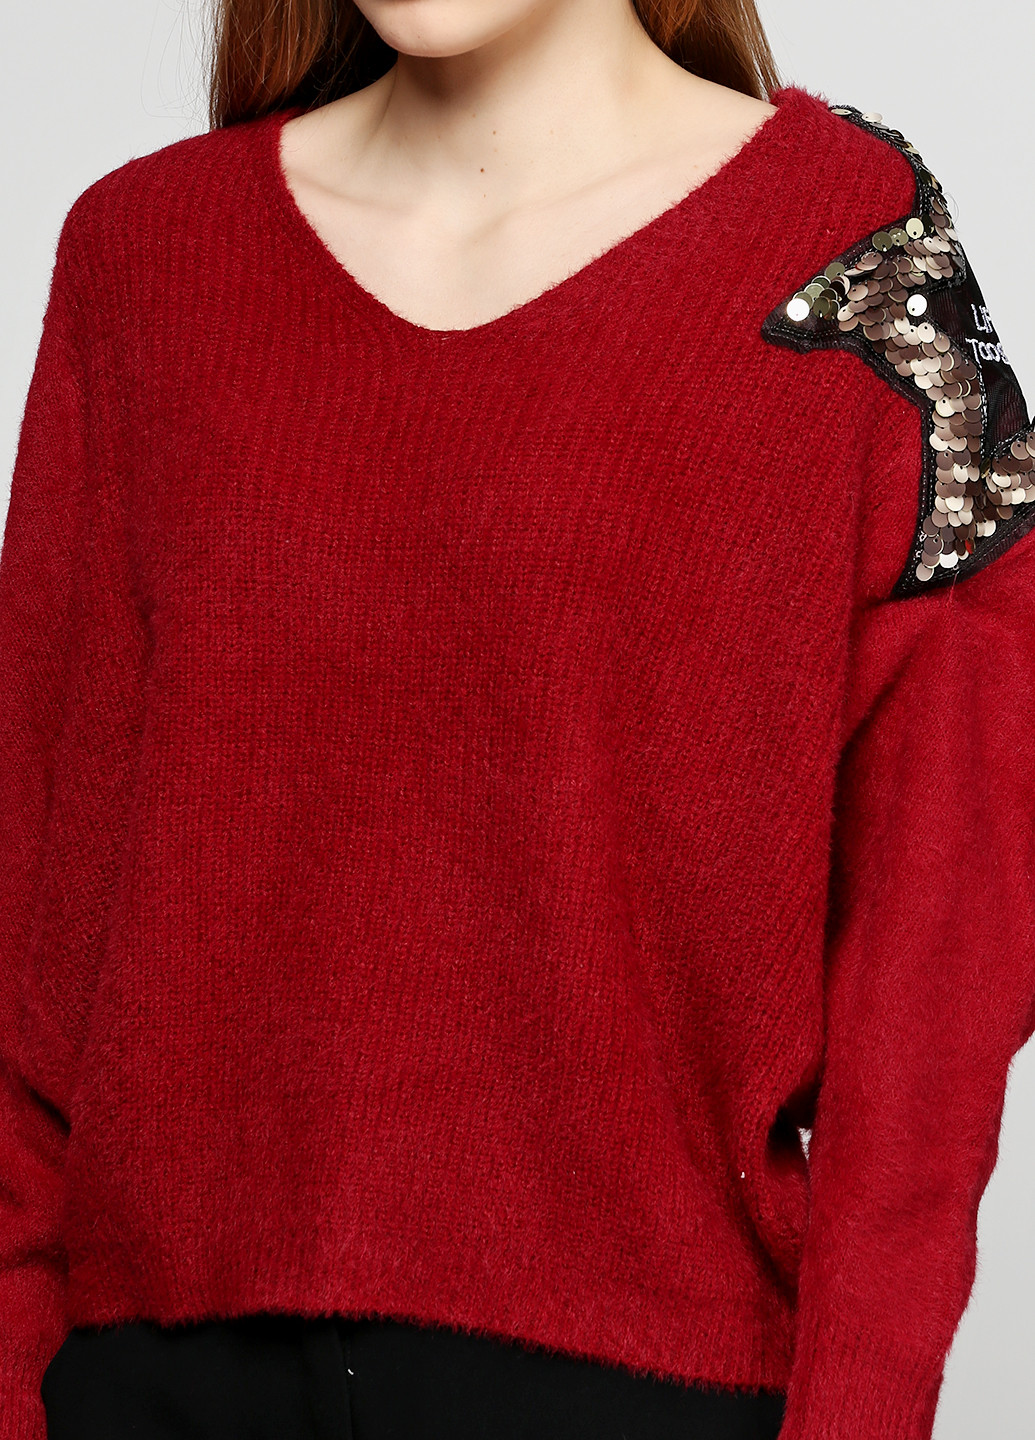 Бордовый демисезонный пуловер пуловер Dolcegiccante